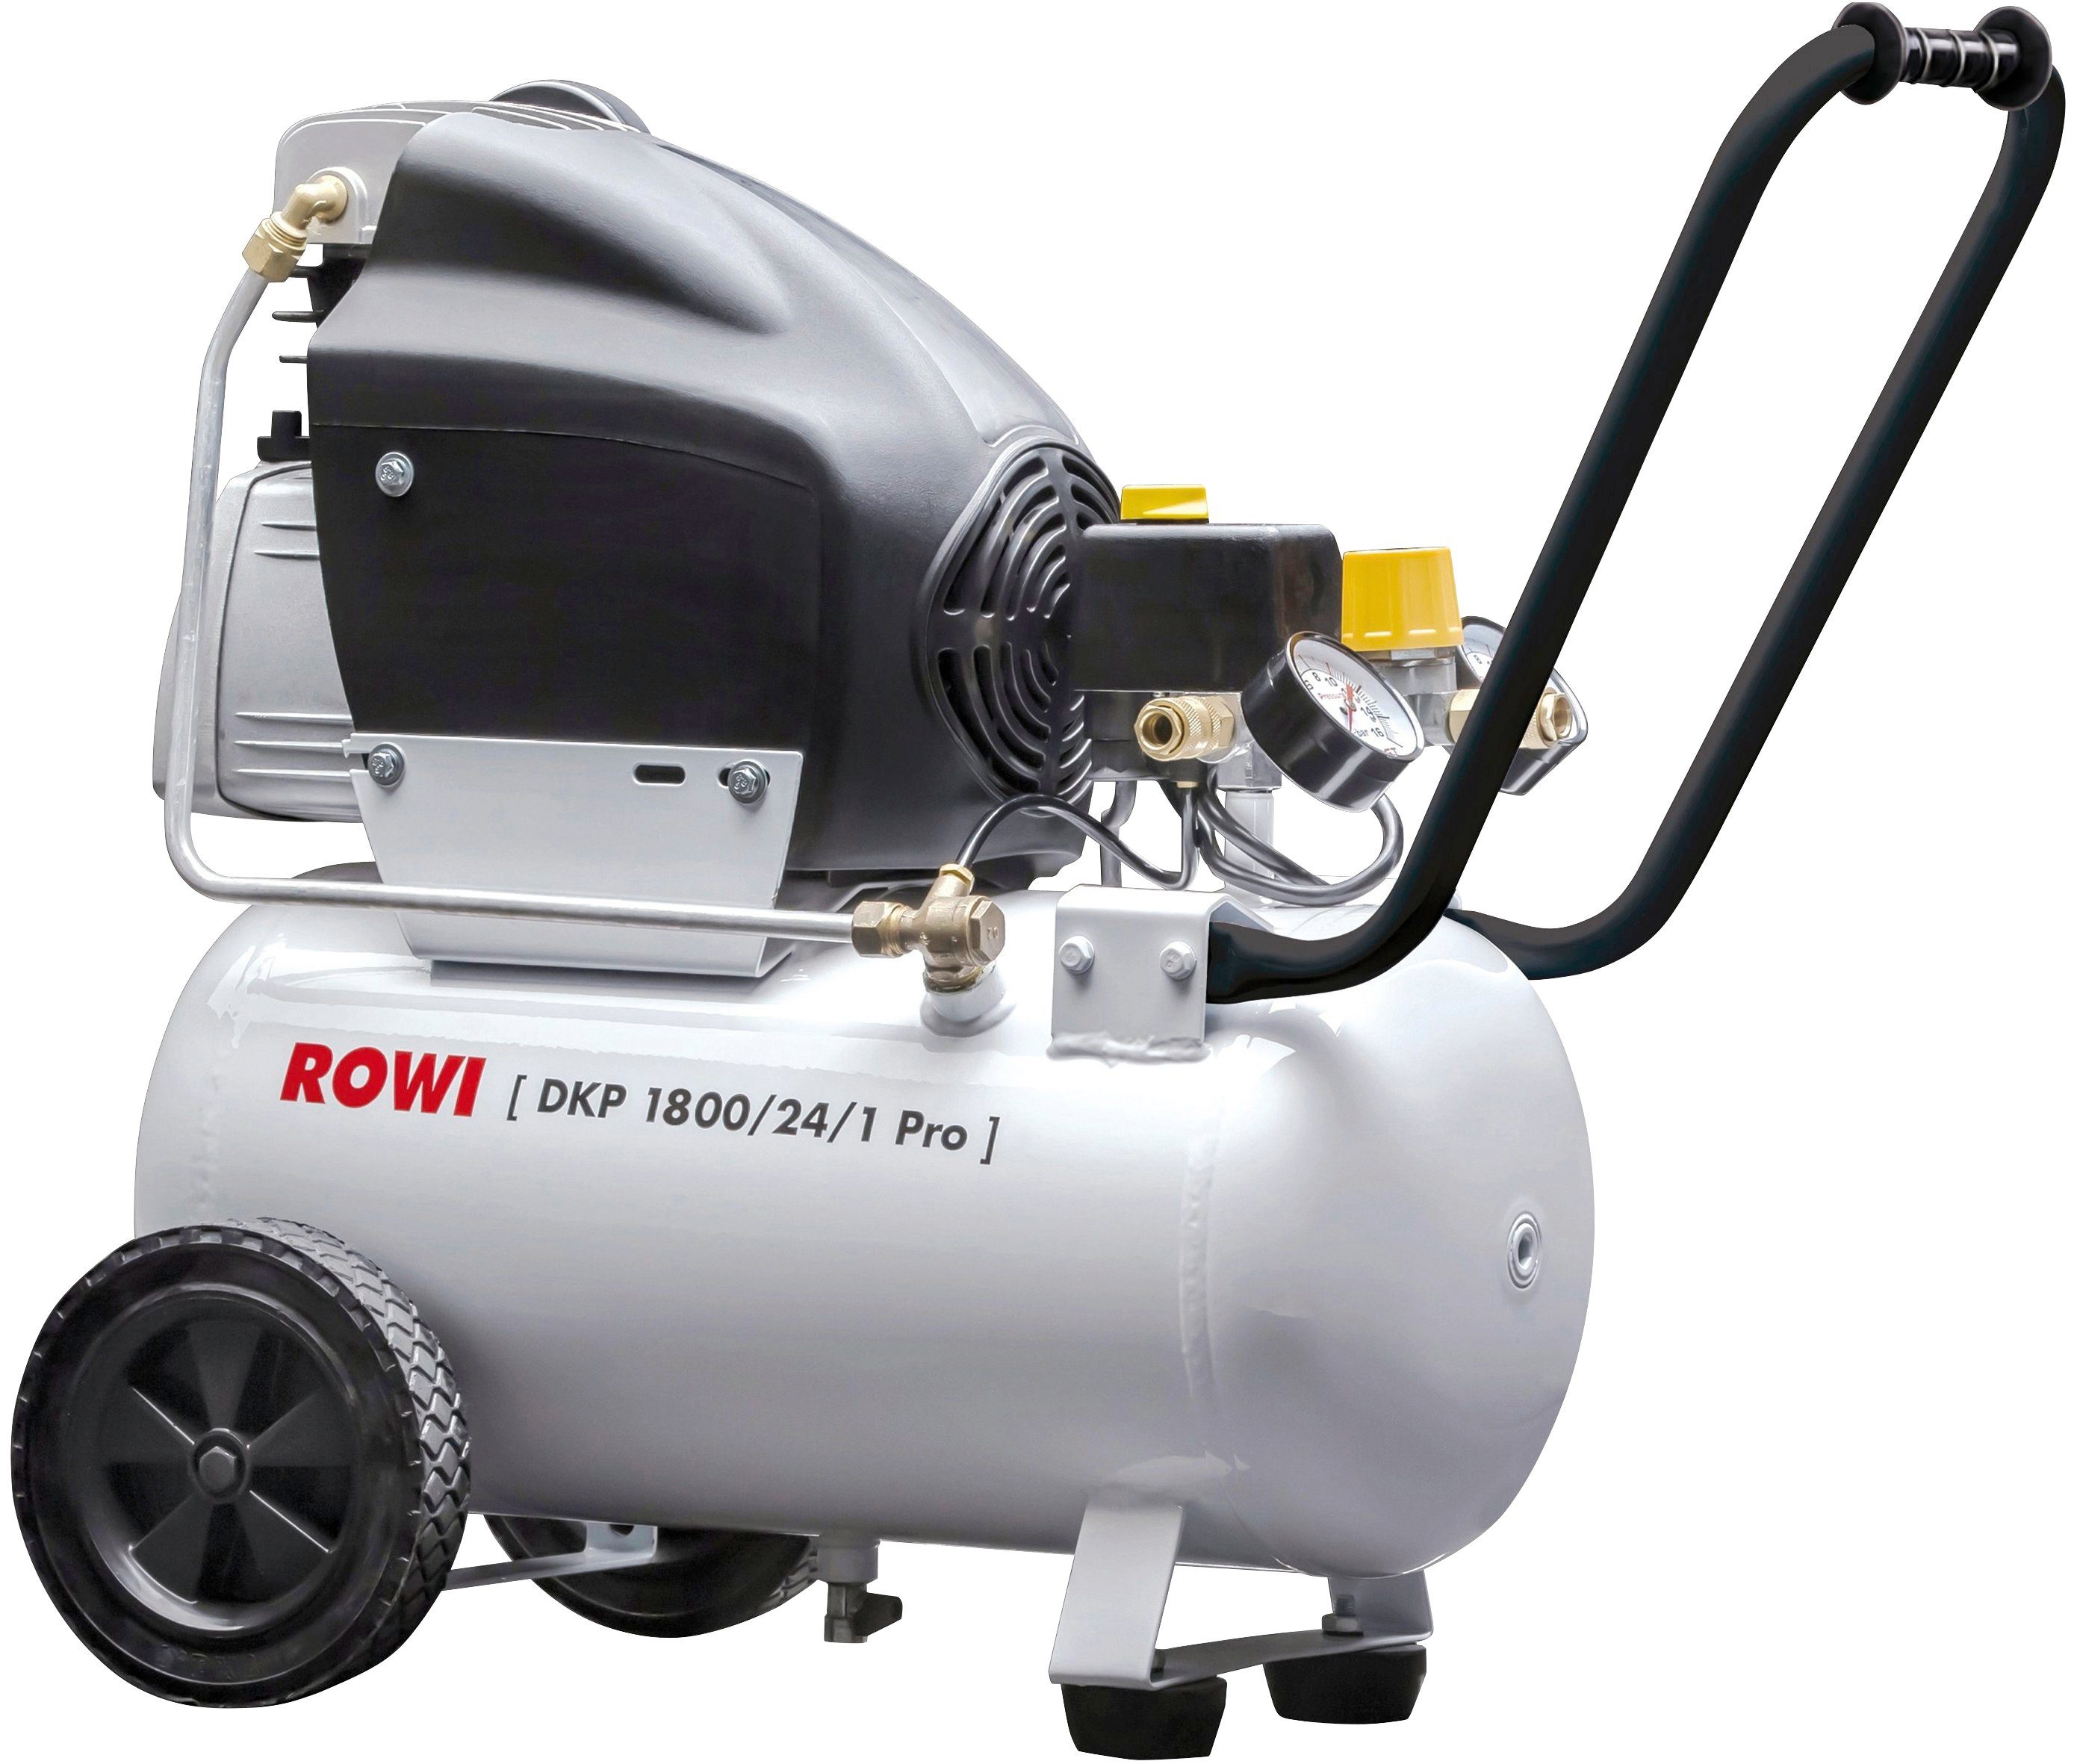 Top-Programm ROWI Kompressor DKP 1800/24/1 Pro, W, l 24 1800 10 max. bar